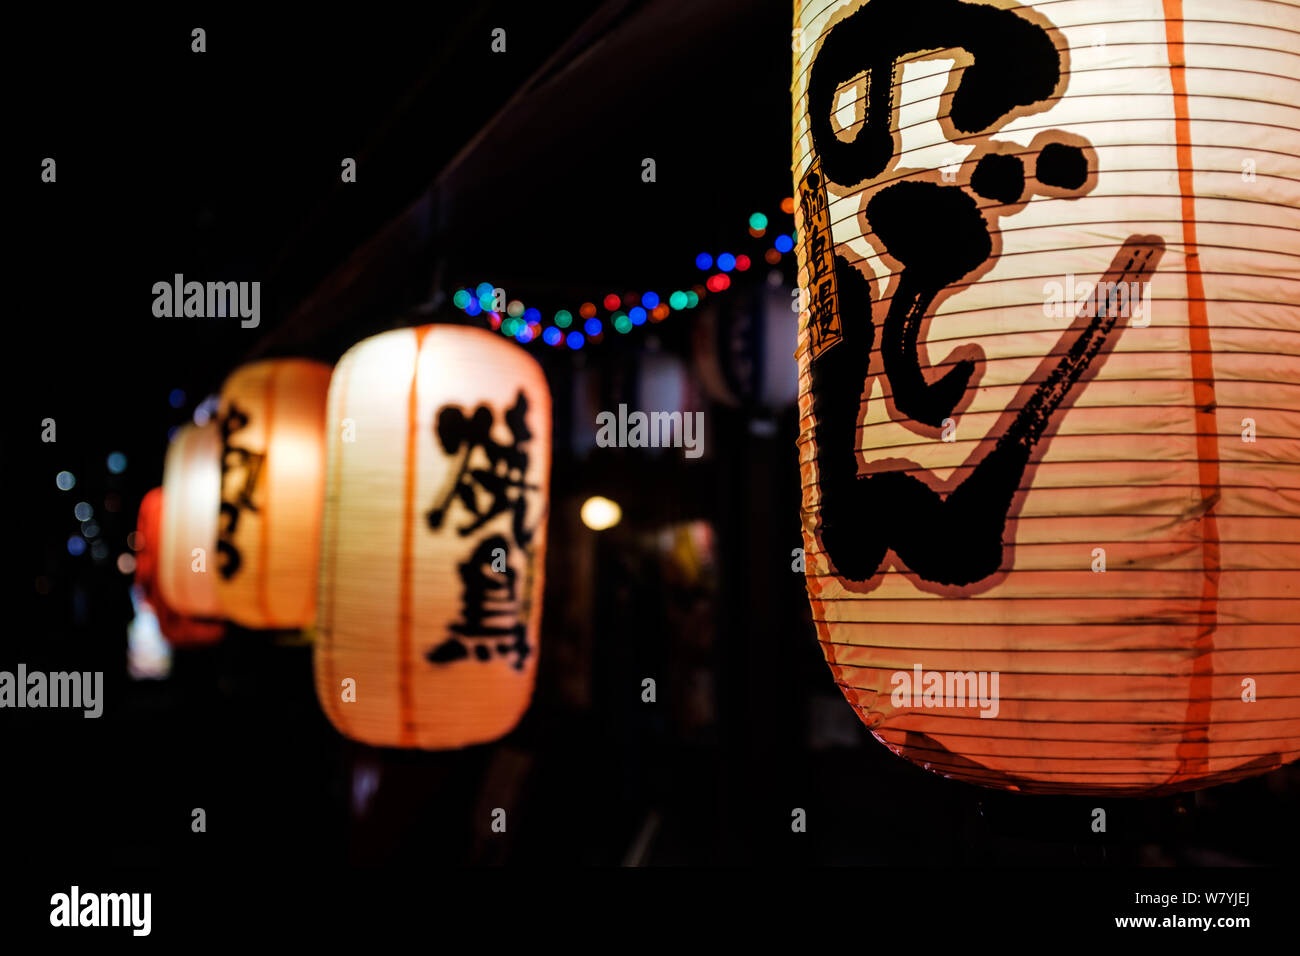 Close up night shot of Japanese hanging lanterns outside bar in Tokyo, Japan Stock Photo